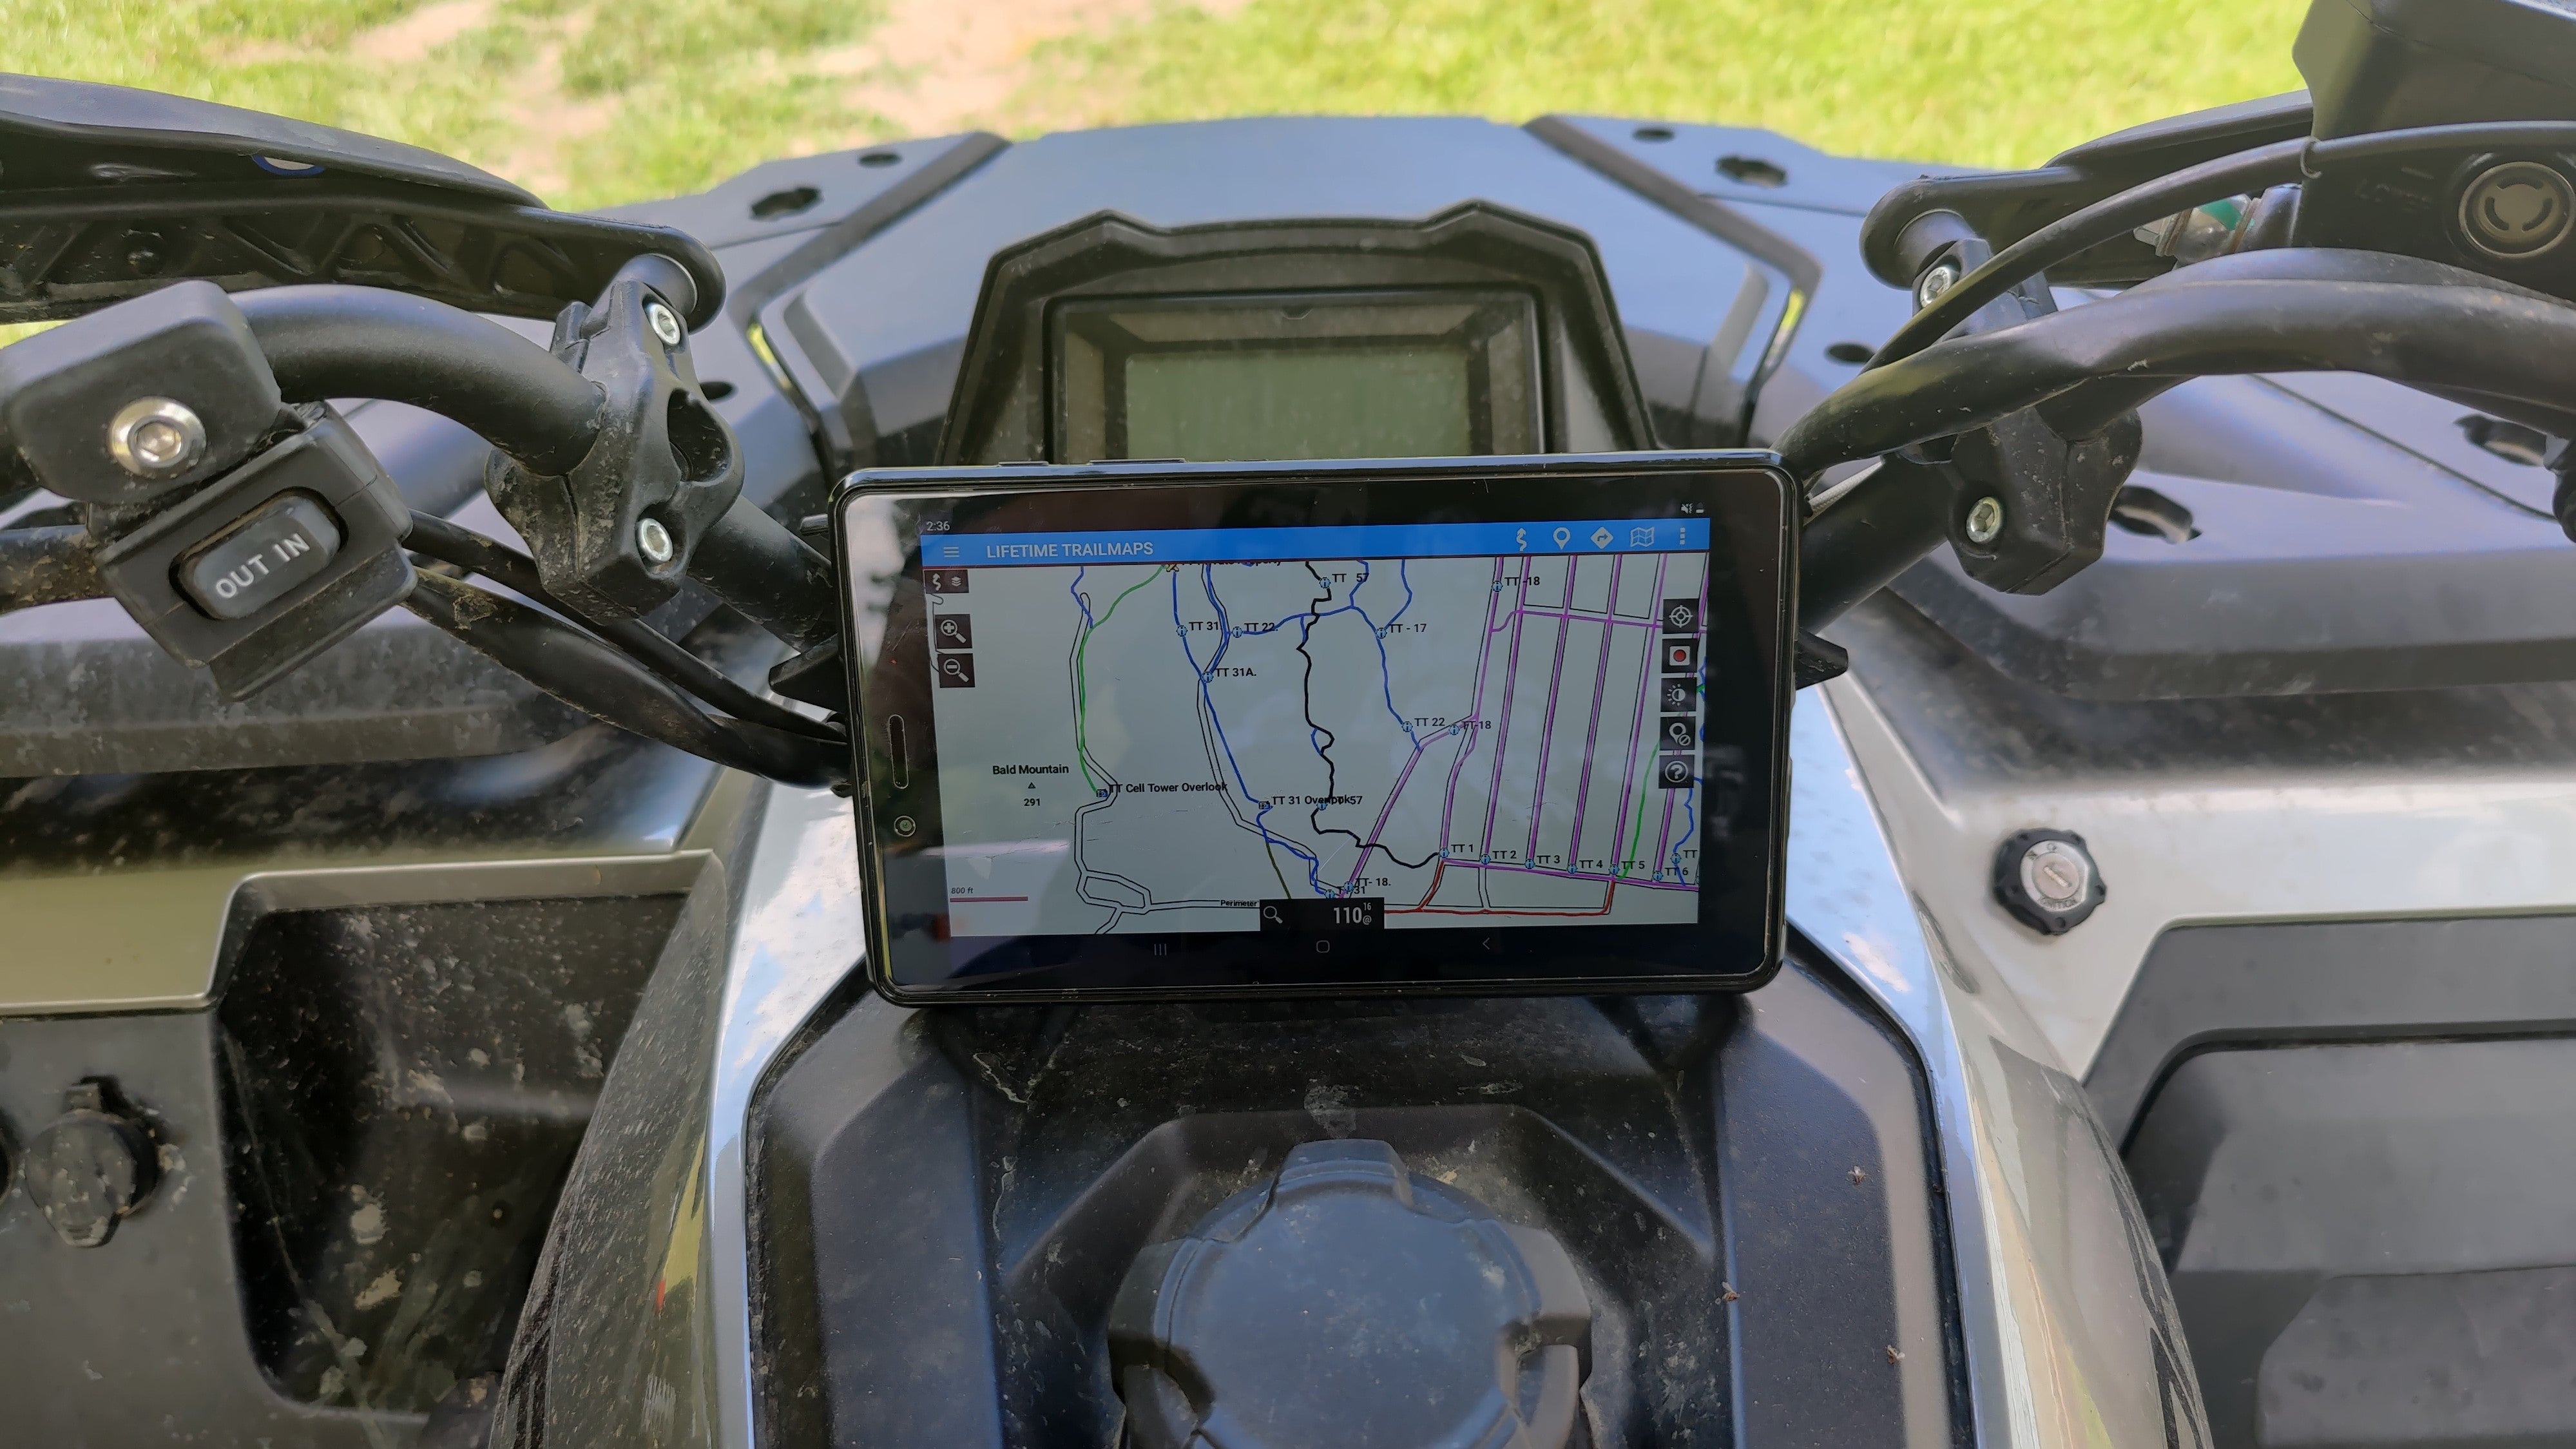 off-road GPS lifetime trailmaps alloutdoor